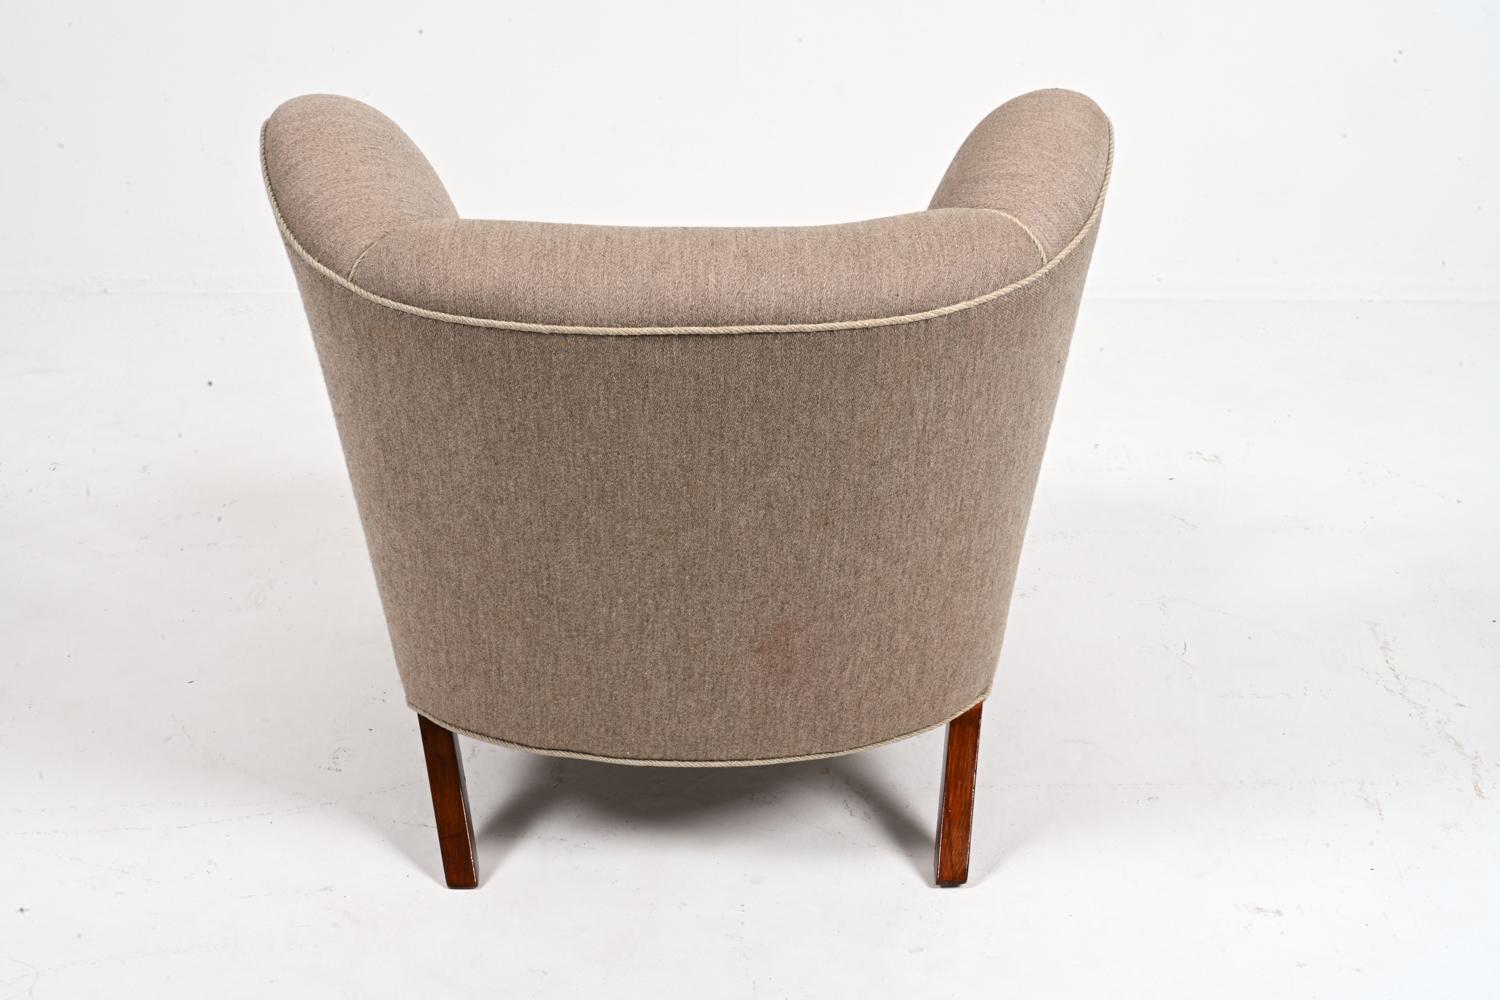 Wool Rare Model 107 Chair by Viggo Boesen for Slagelse Mobelvaerk, Denmark, c. 1940's For Sale